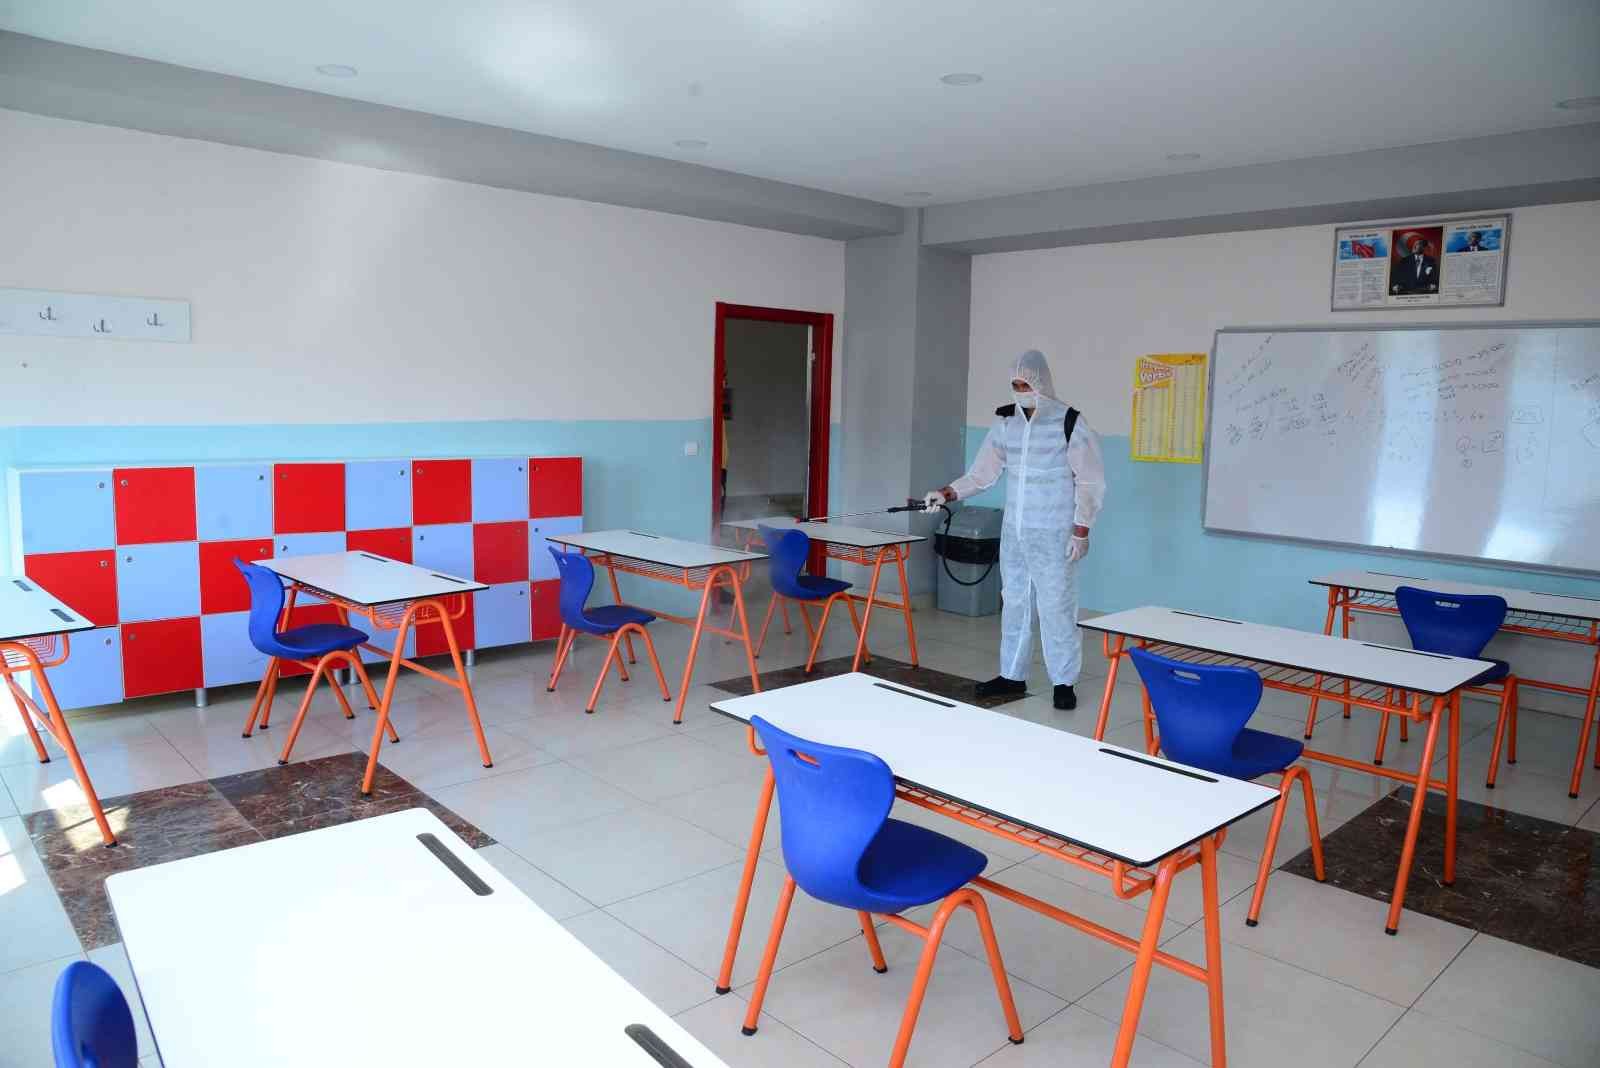 Kahramankazan’da okullar eğitim öğretime hazır #ankara